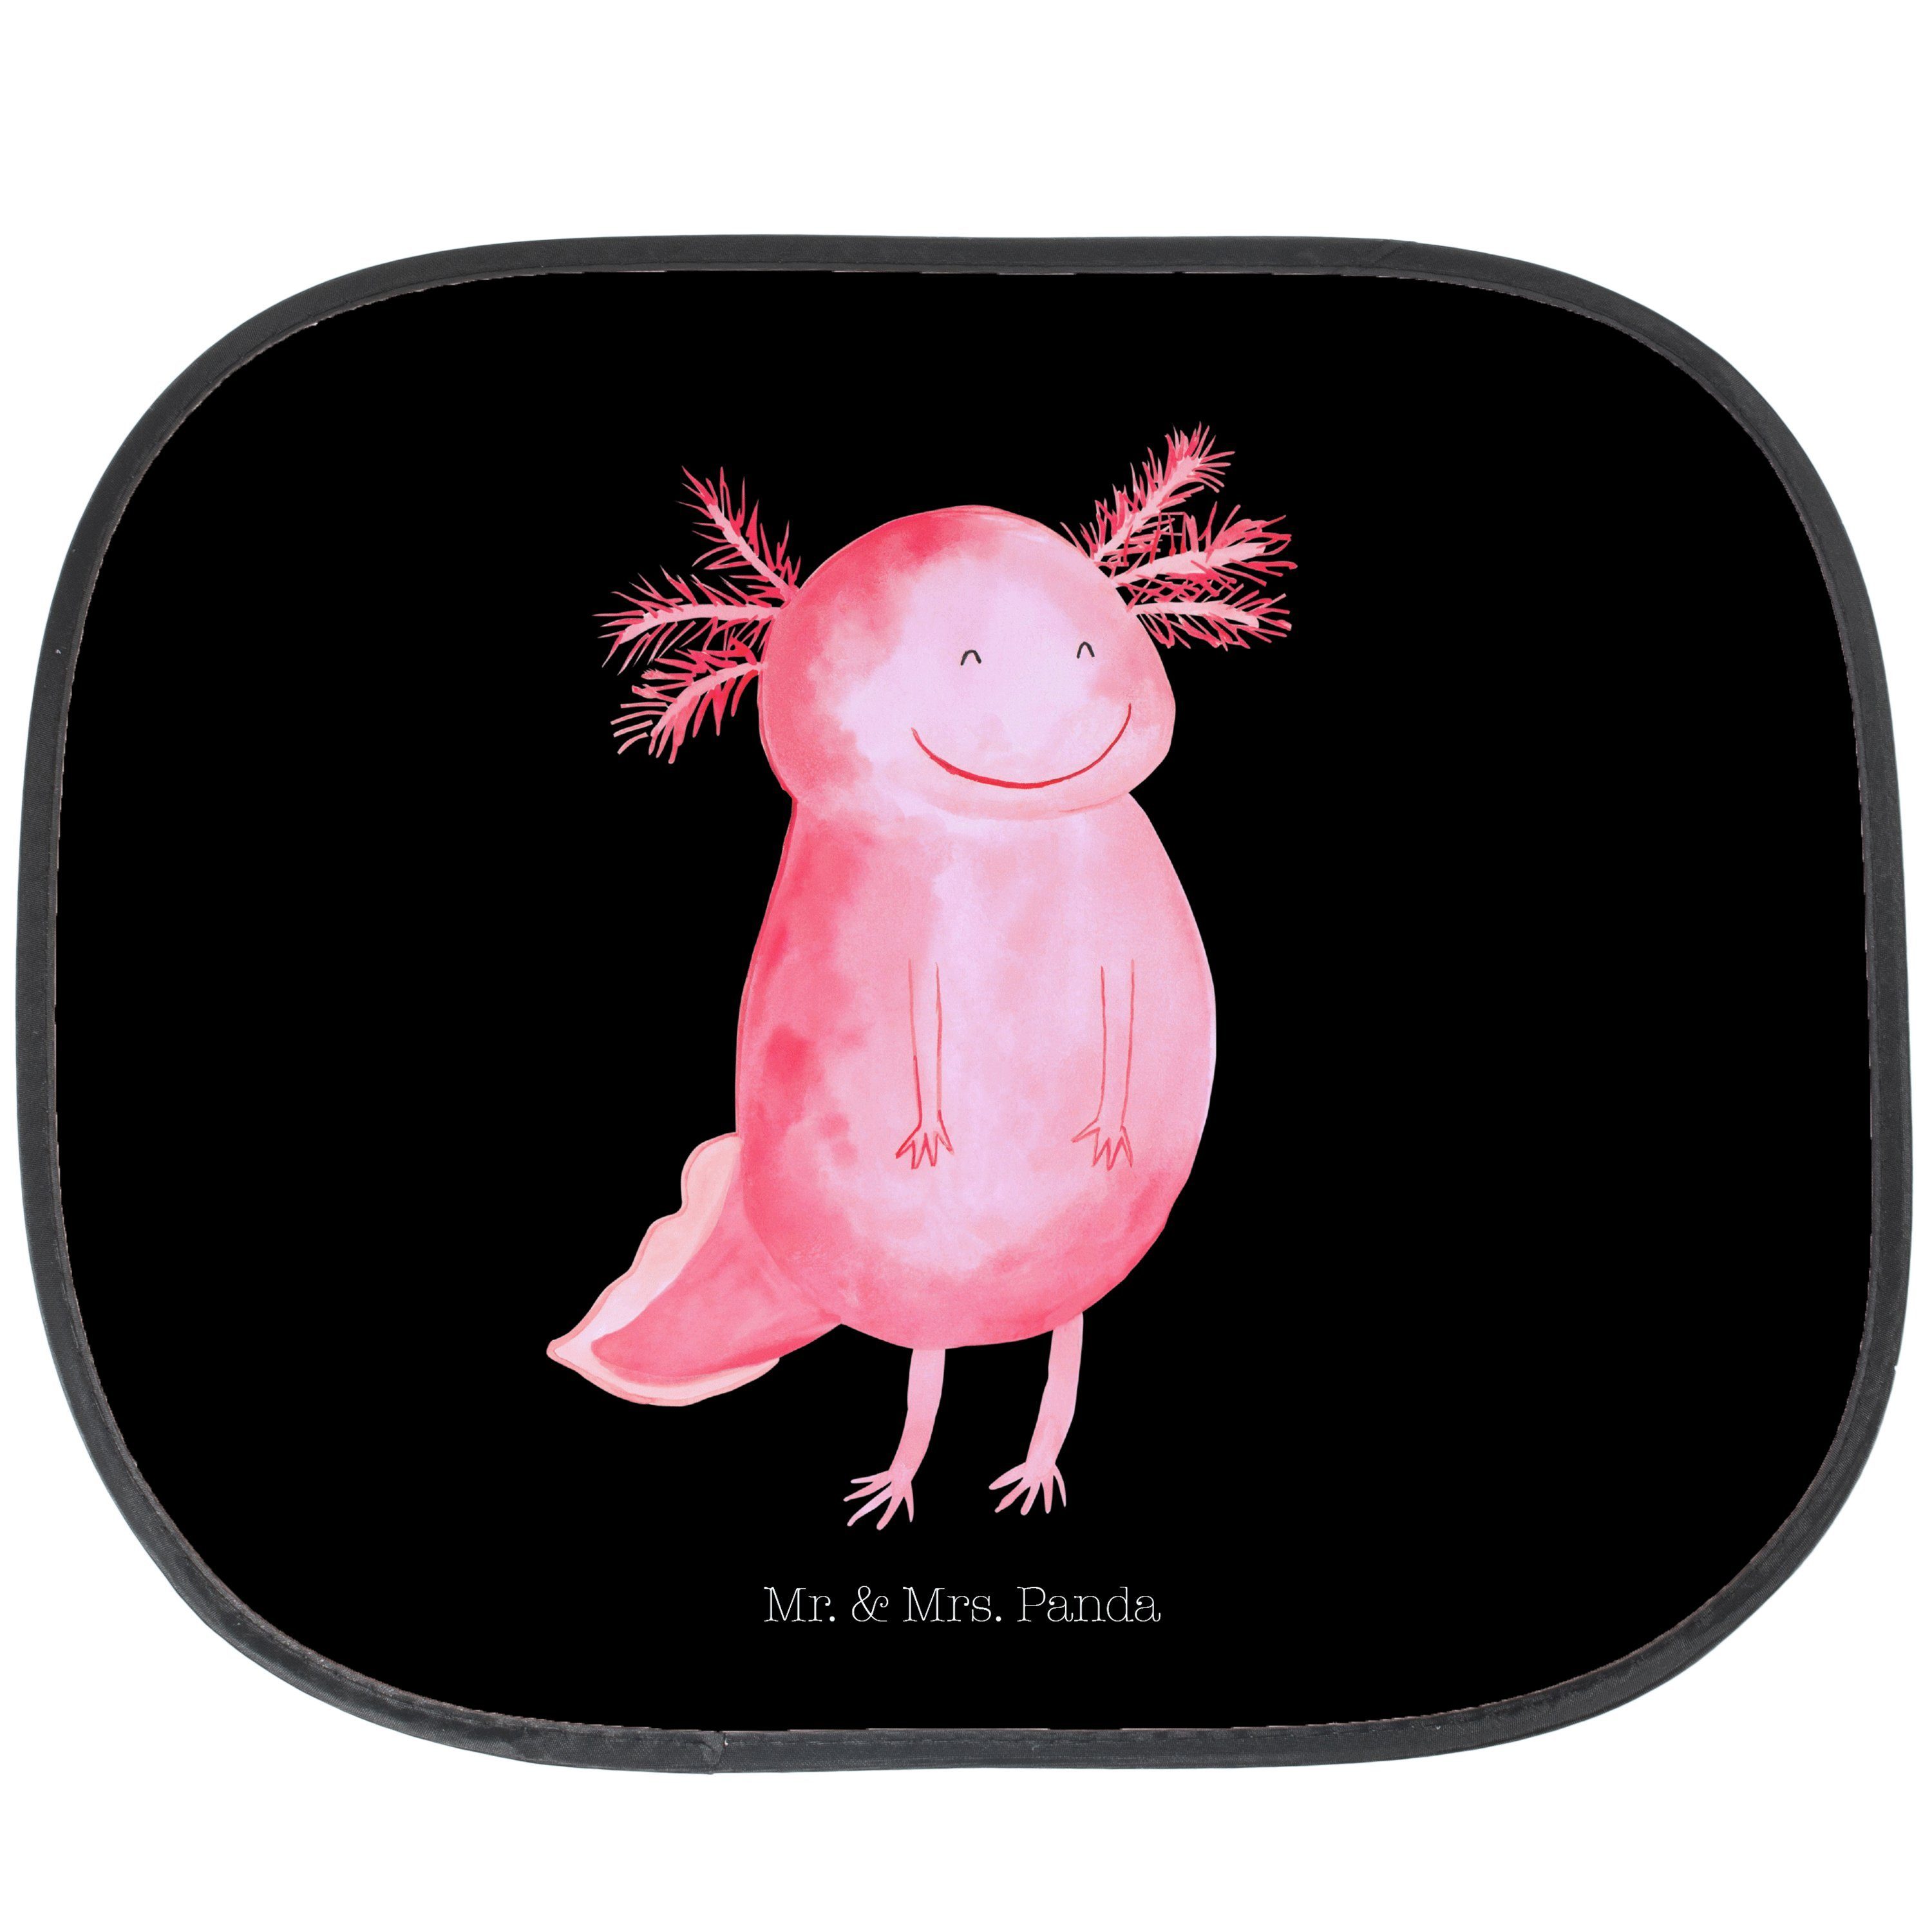 Sonnenschutz Axolotl glücklich - Schwarz - Geschenk, Sonnenschutz Kinder, Schwanzl, Mr. & Mrs. Panda, Seidenmatt